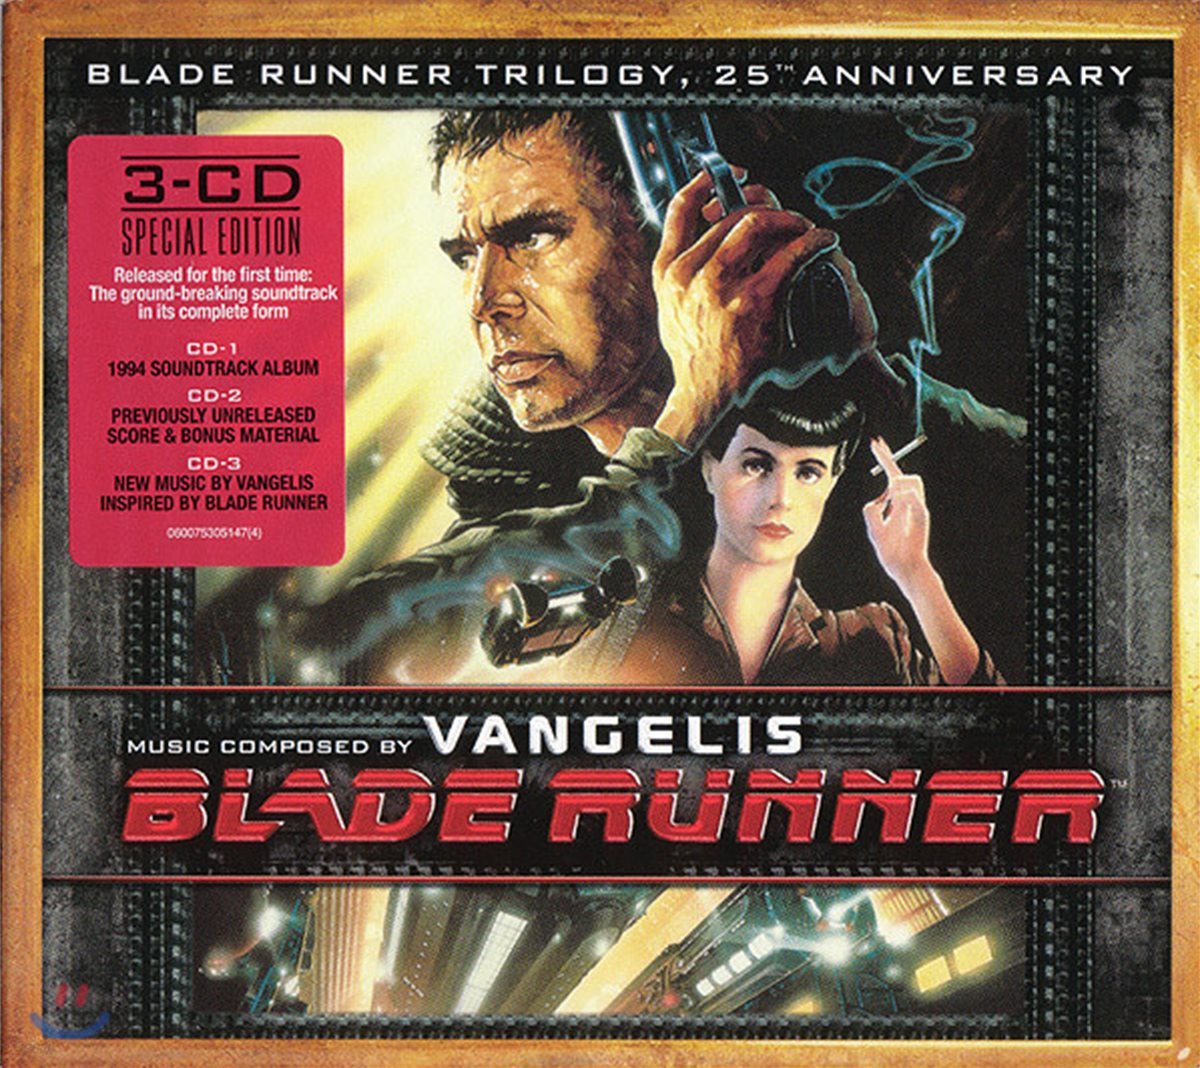 블레이드 러너 영화음악 (Blade Runner Trilogy OST: 25th Anniversary) [트롤로지 25주년 기념]